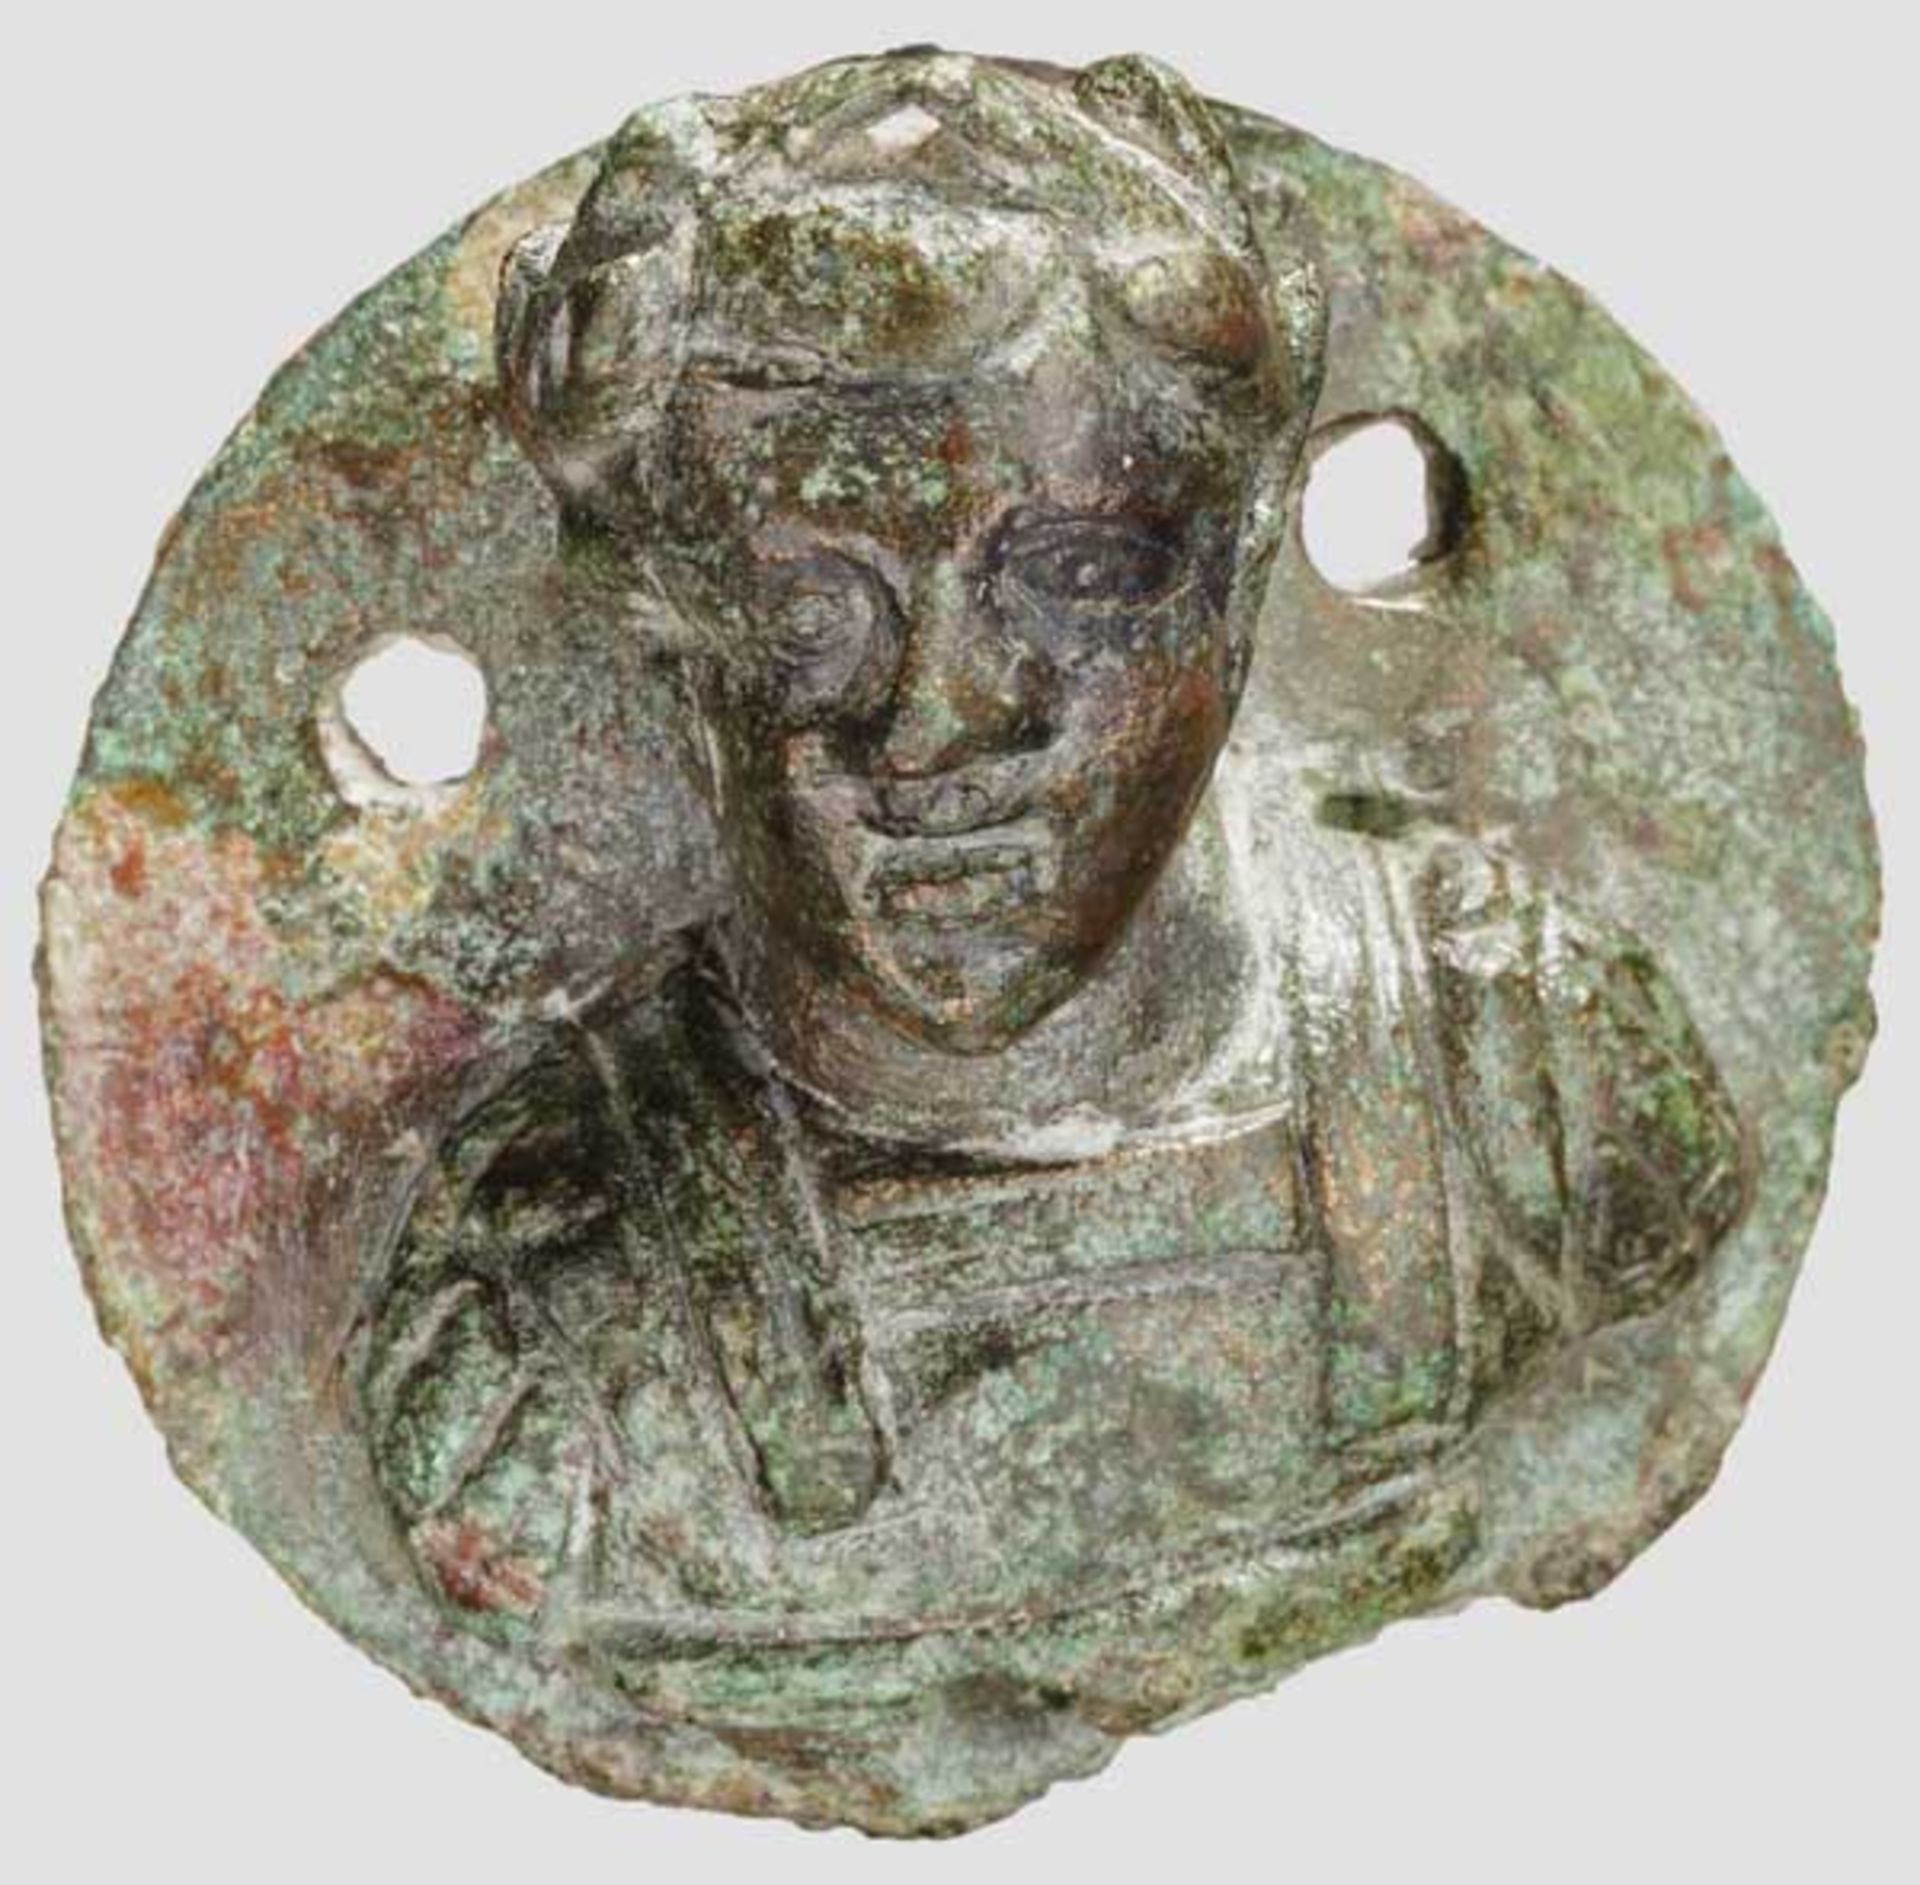 Medaillonartige Bronzeapplik mit Kaiserbüste, römisch, 3. Jhdt. Applik in Form eines Medaillons - Bild 3 aus 3